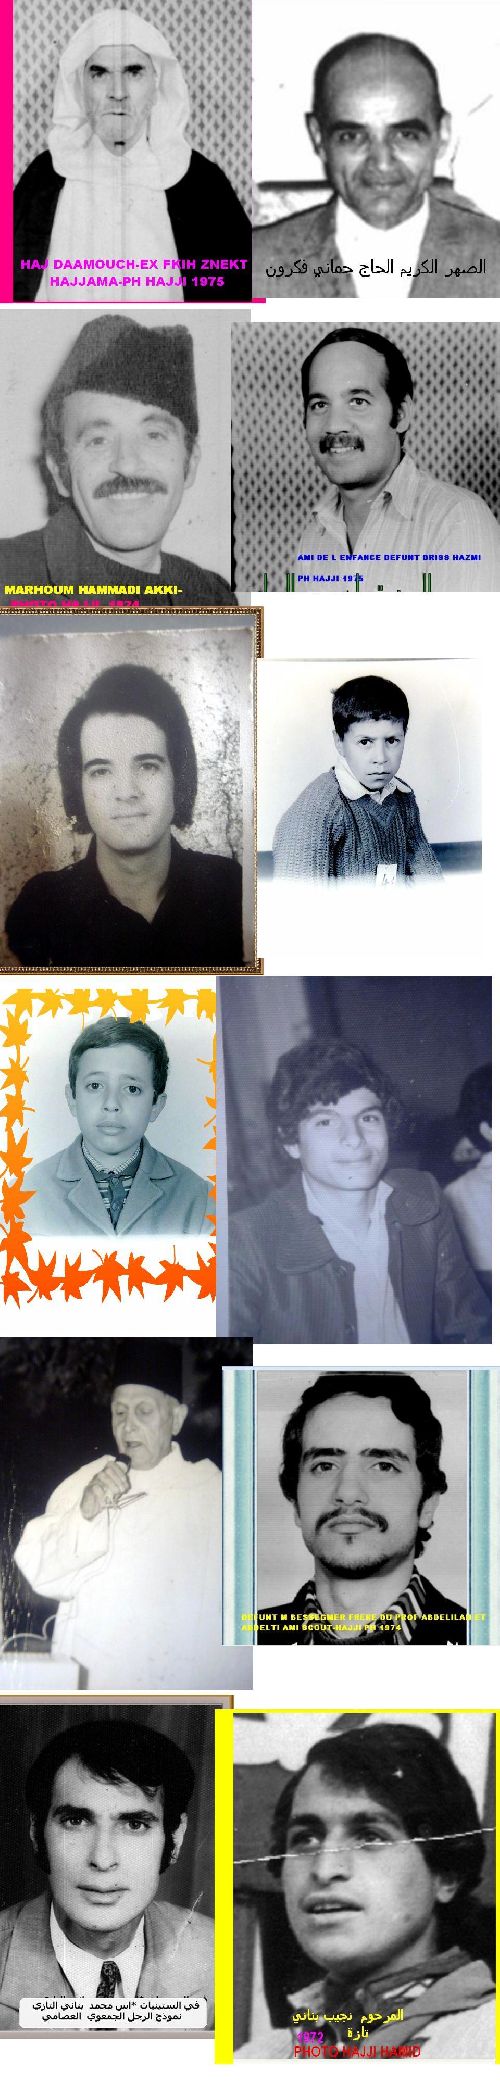 touazas par identites 170-1985-photo hajji hamid-tel o77650737